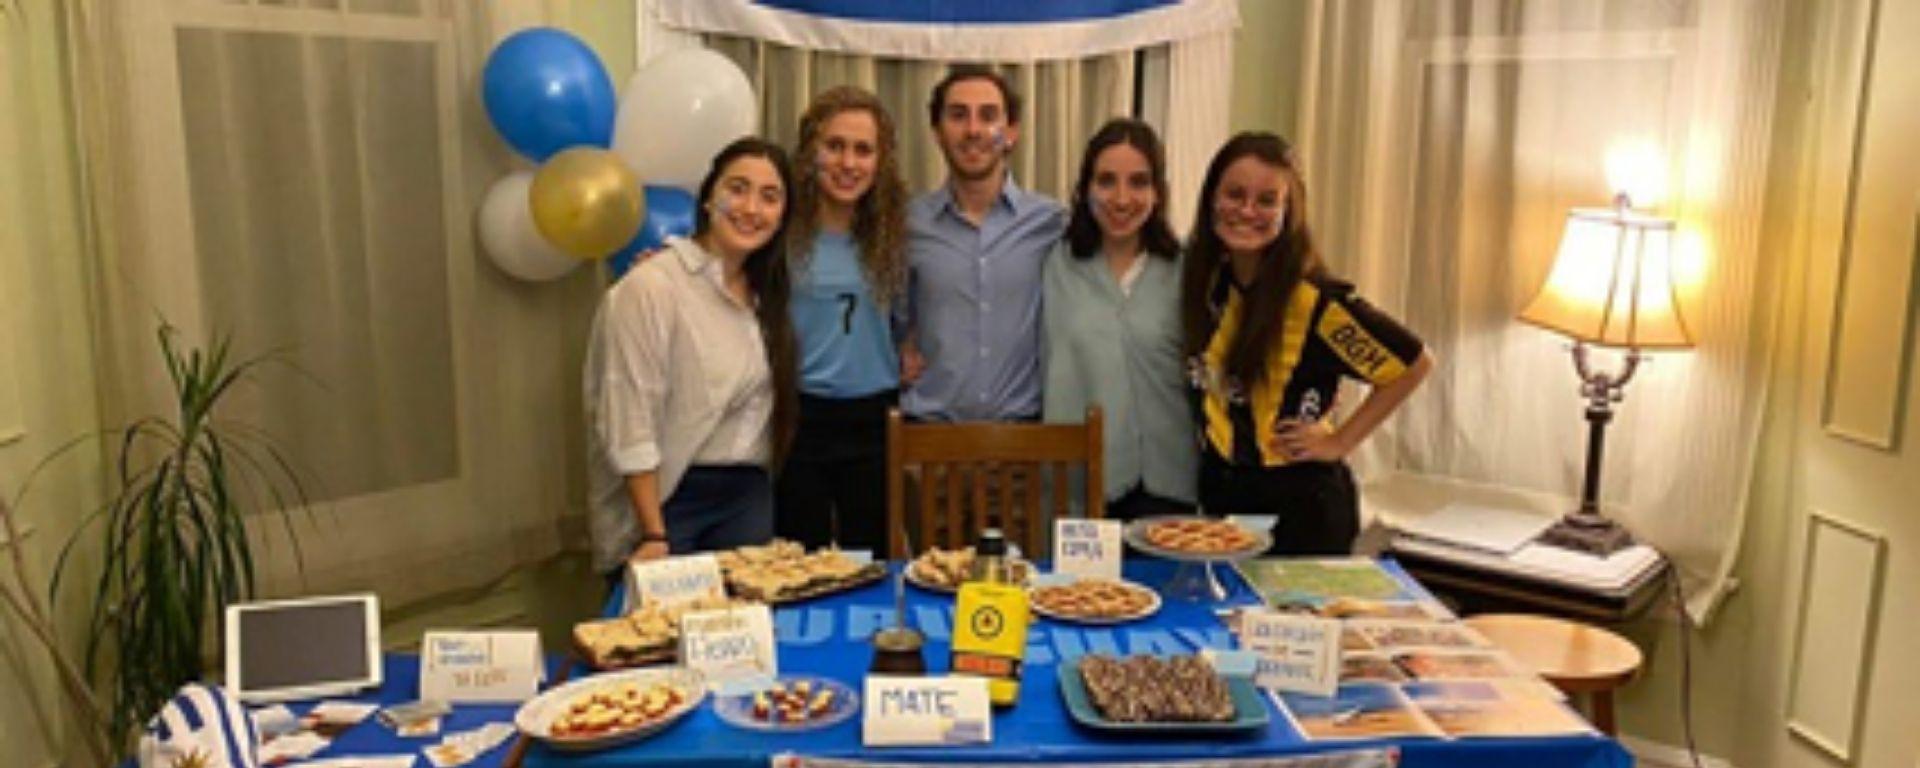 Cinco universitarios uruguayos